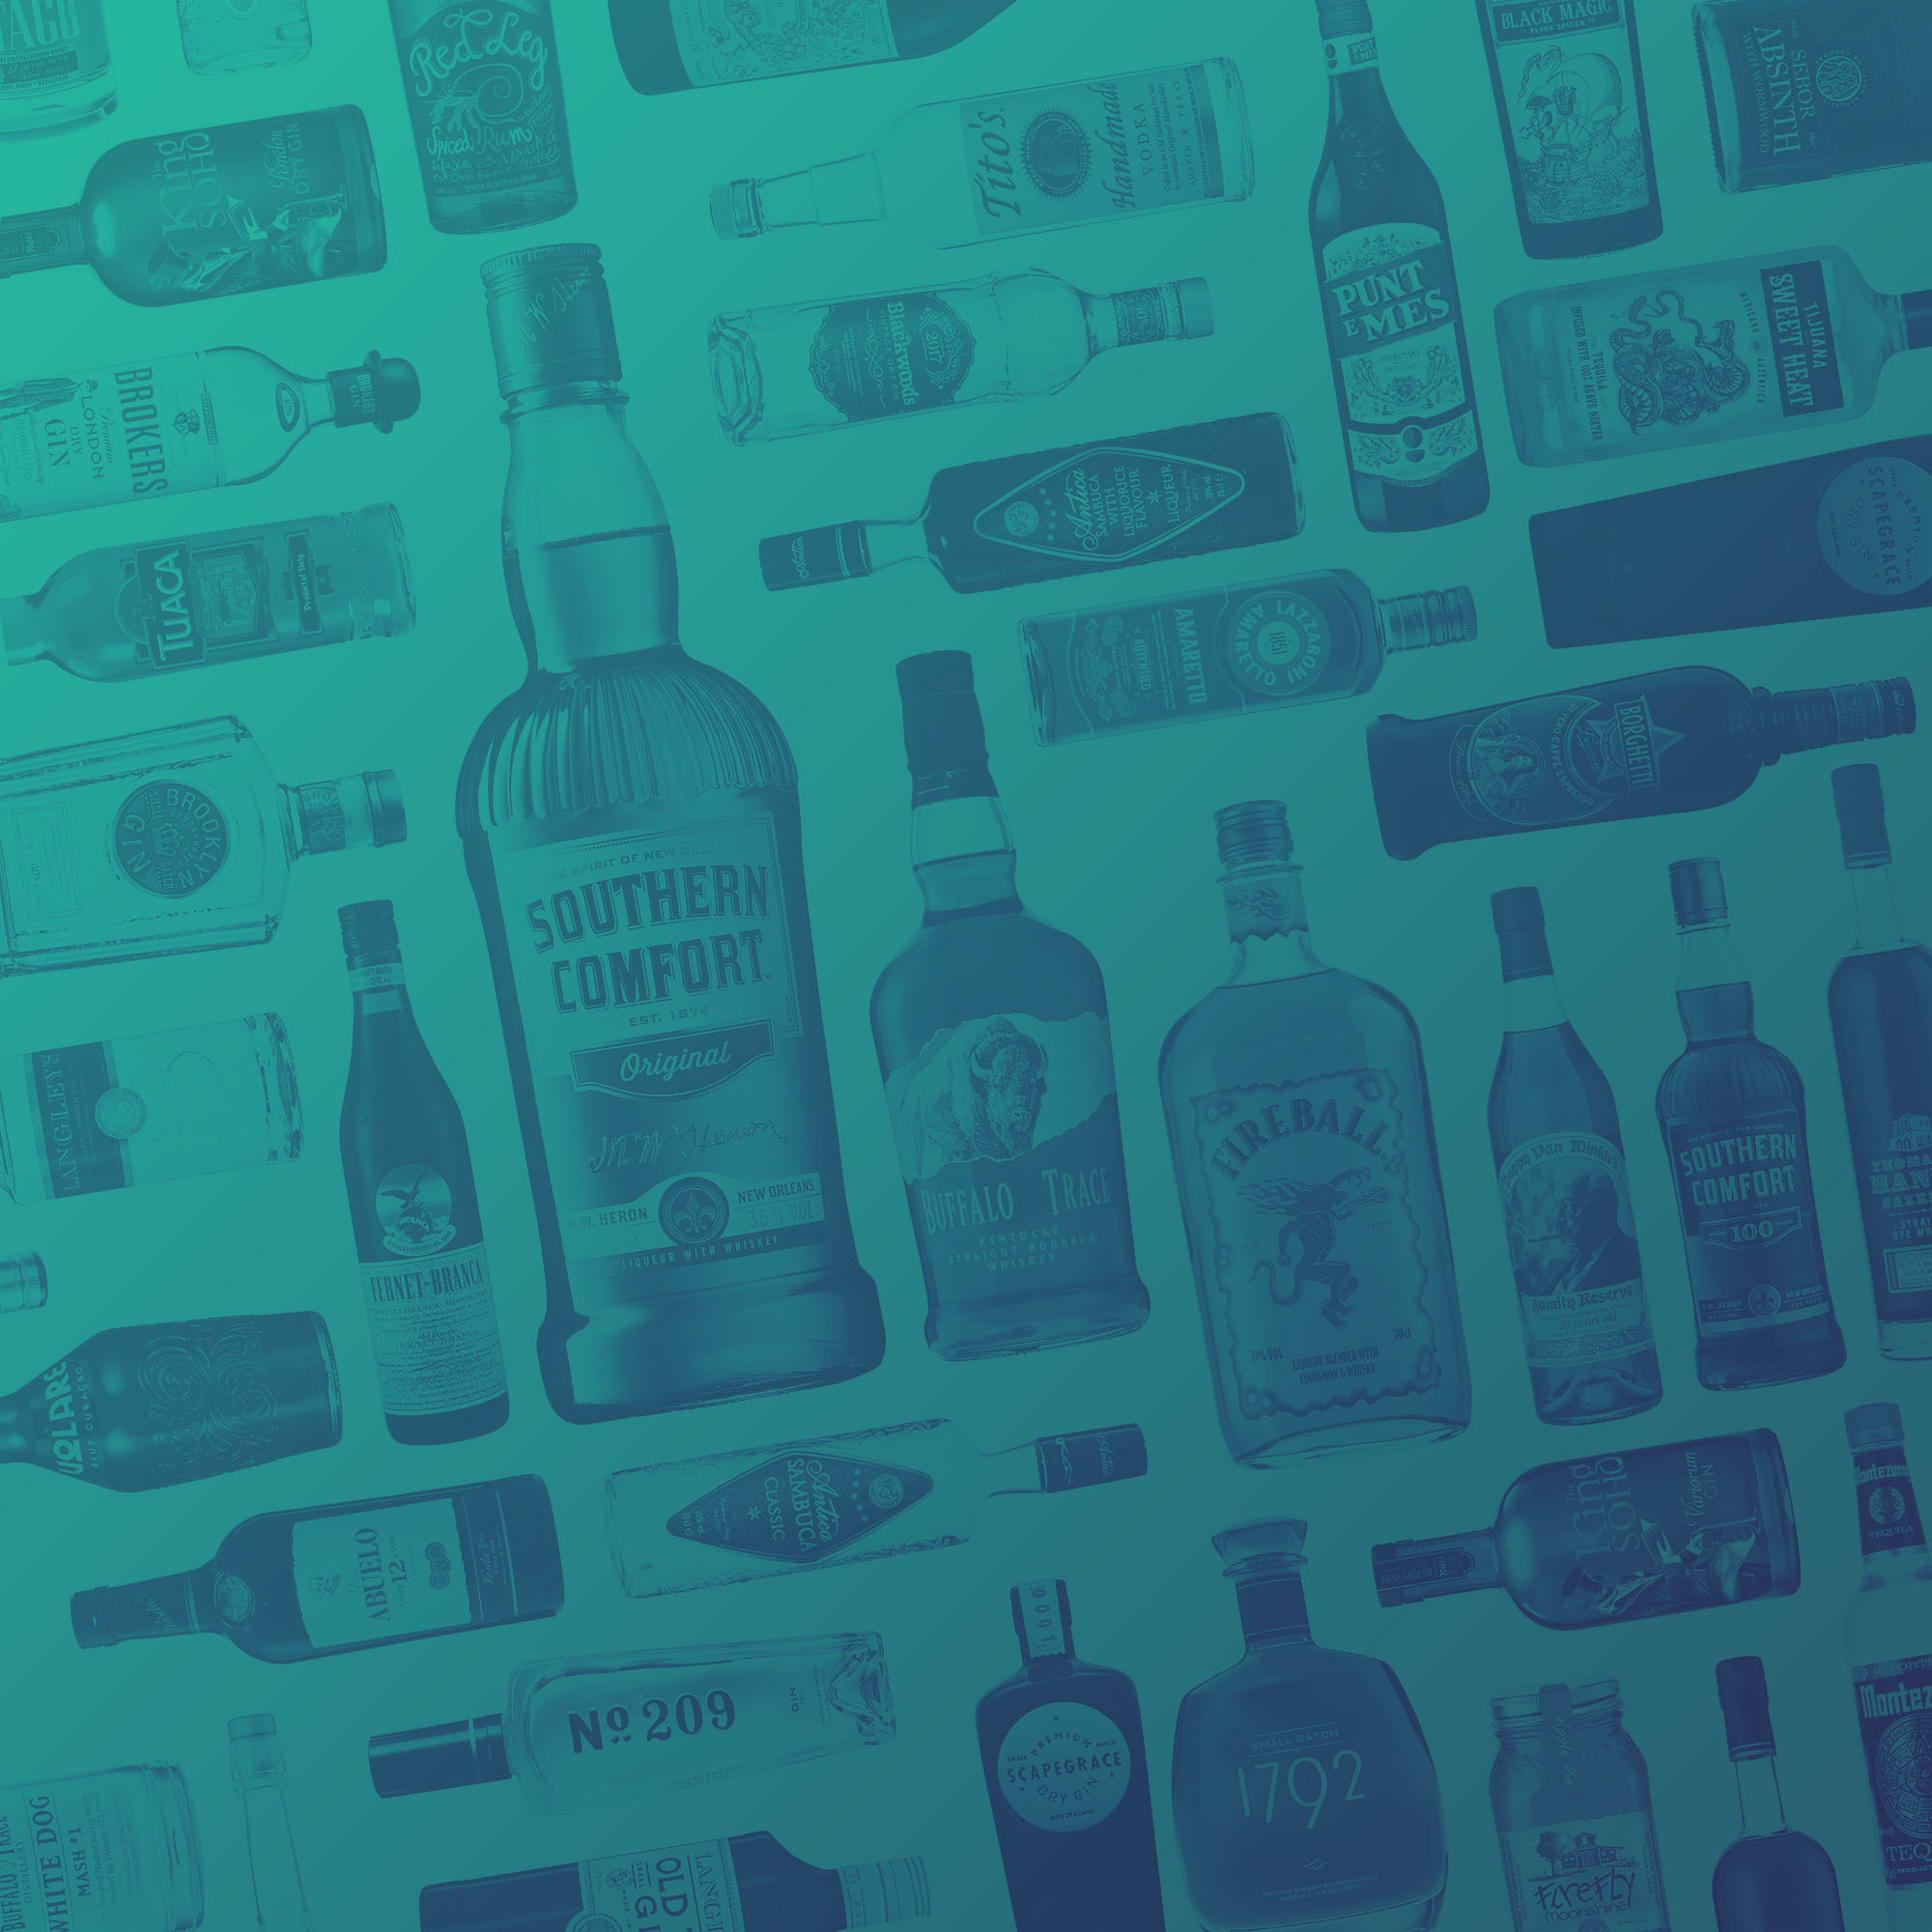 Marketing Manager – Imported Whiskey